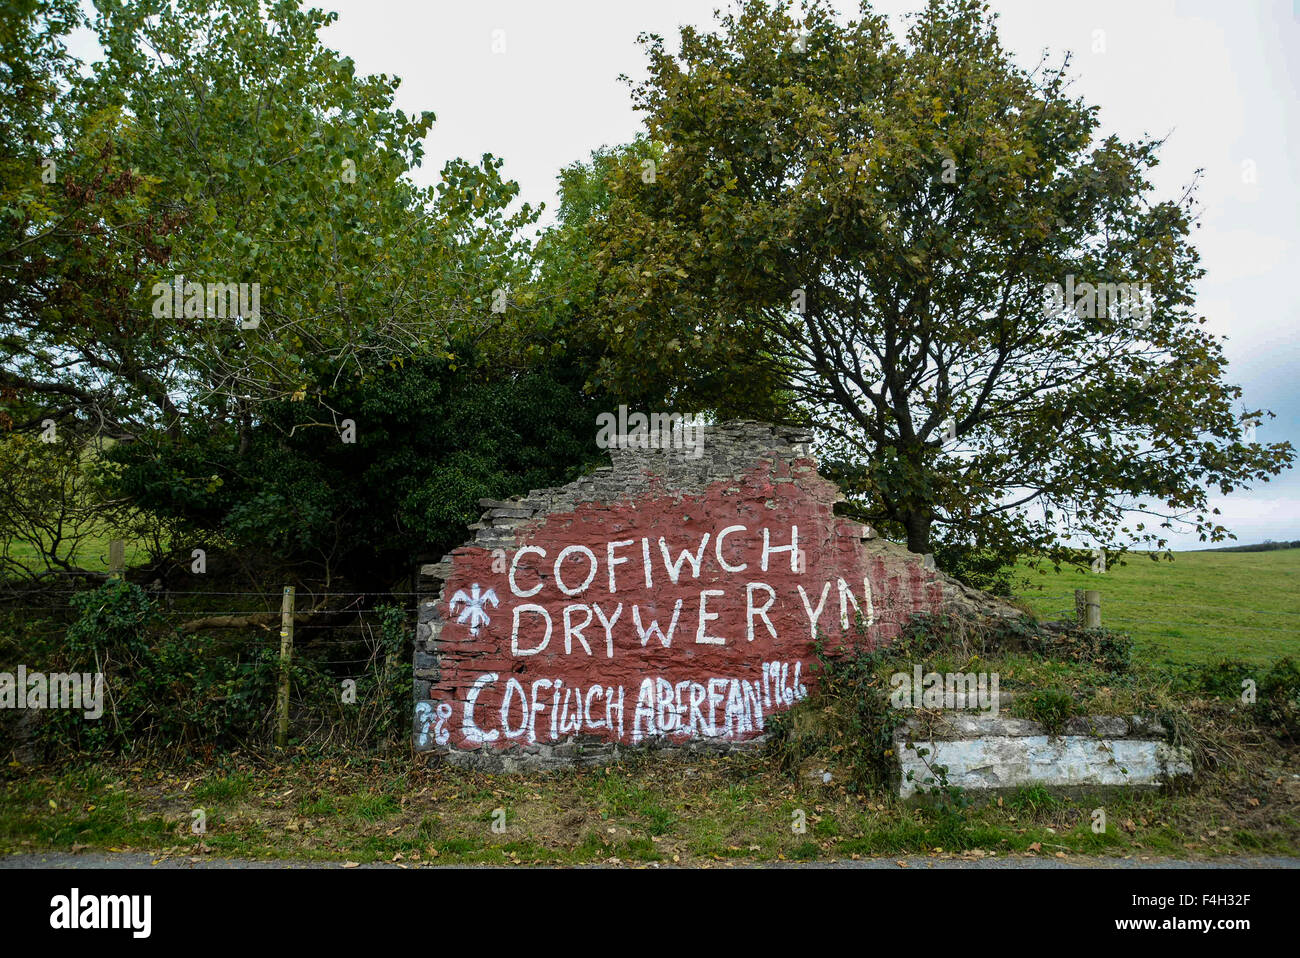 18. Oktober 2015 ist der 50. Geburtstag und auf die A487 ein Graffiti beschmiert auf moosbewachsenen baufälligen Wand auf den gewundenen A487 Küstenstrasse nach Llanrhystud in Ceredigion ist die einzige Erinnerung Links für Passanten eines Ereignisses, das eine der größten Kampagnen für die walisische Unabhängigkeit seit Menschengedenken angeheizt.  Die verblassen Worte ÒCofiwch DrywerynÓ (denken Sie daran, Tryweryn) sind die inoffiziellen Denkmal für Walisisch sprechende Menschen von Capel Celyn in Gwynedd, die ihre Häuser verloren, wenn das Tryweryn-Tal im Jahr 1965 zu einer riesigen Reservoir um die Stadt von Liverpool mit Wasser zu versorgen überschwemmt wurde. Stockfoto